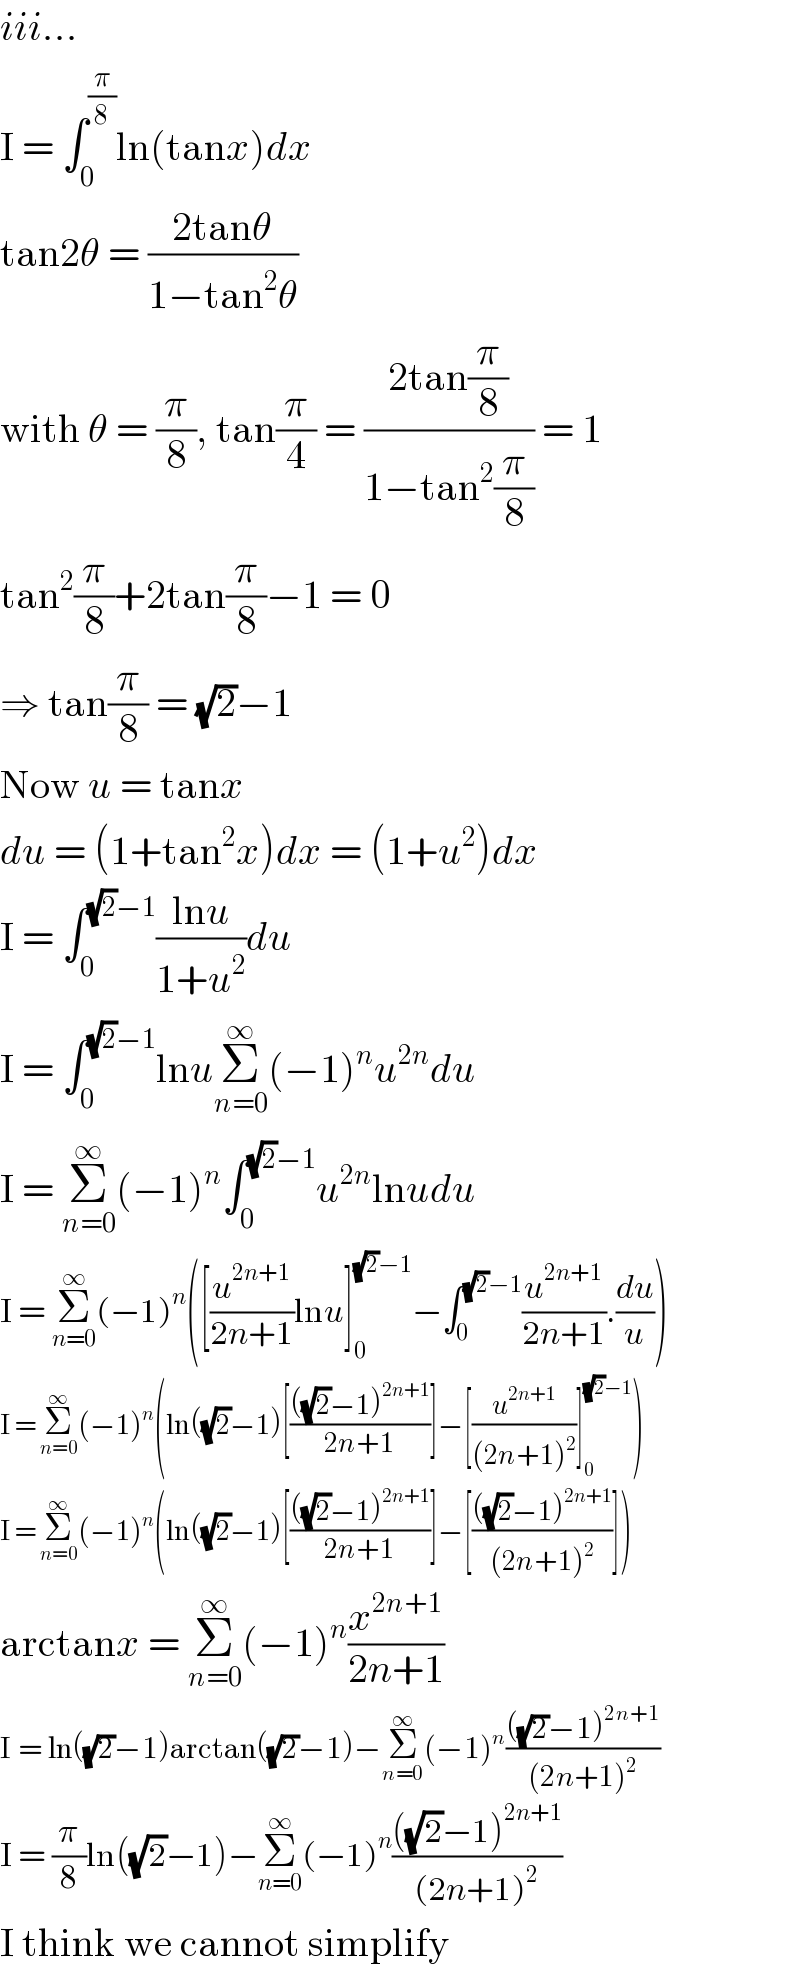 iii...  I = ∫_0 ^(π/8) ln(tanx)dx  tan2θ = ((2tanθ)/(1−tan^2 θ))  with θ = (π/8), tan(π/4) = ((2tan(π/8))/(1−tan^2 (π/8))) = 1  tan^2 (π/8)+2tan(π/8)−1 = 0  ⇒ tan(π/8) = (√2)−1  Now u = tanx  du = (1+tan^2 x)dx = (1+u^2 )dx  I = ∫_0 ^((√2)−1) ((lnu)/(1+u^2 ))du  I = ∫_0 ^((√2)−1) lnuΣ_(n=0) ^∞ (−1)^n u^(2n) du  I = Σ_(n=0) ^∞ (−1)^n ∫_0 ^((√2)−1) u^(2n) lnudu  I = Σ_(n=0) ^∞ (−1)^n ([(u^(2n+1) /(2n+1))lnu]_0 ^((√2)−1) −∫_0 ^((√2)−1) (u^(2n+1) /(2n+1)).(du/u))  I = Σ_(n=0) ^∞ (−1)^n (ln((√2)−1)[((((√2)−1)^(2n+1) )/(2n+1))]−[(u^(2n+1) /((2n+1)^2 ))]_0 ^((√2)−1) )  I = Σ_(n=0) ^∞ (−1)^n (ln((√2)−1)[((((√2)−1)^(2n+1) )/(2n+1))]−[((((√2)−1)^(2n+1) )/((2n+1)^2 ))])  arctanx = Σ_(n=0) ^∞ (−1)^n (x^(2n+1) /(2n+1))  I = ln((√2)−1)arctan((√2)−1)−Σ_(n=0) ^∞ (−1)^n ((((√2)−1)^(2n+1) )/((2n+1)^2 ))  I = (π/8)ln((√2)−1)−Σ_(n=0) ^∞ (−1)^n ((((√2)−1)^(2n+1) )/((2n+1)^2 ))  I think we cannot simplify  